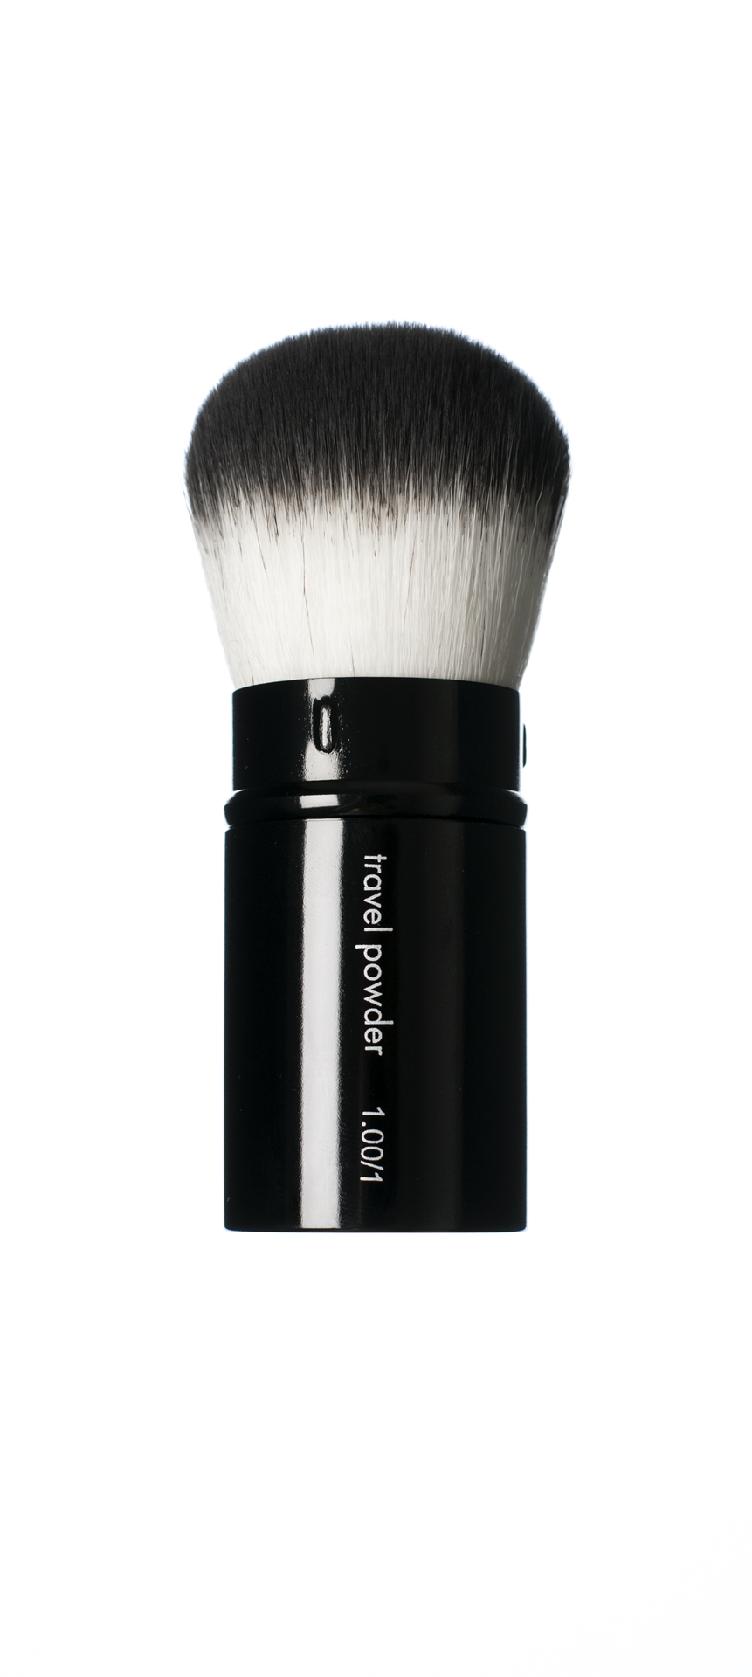 HIRO Natural Cosmetics - Travel Powder Brush